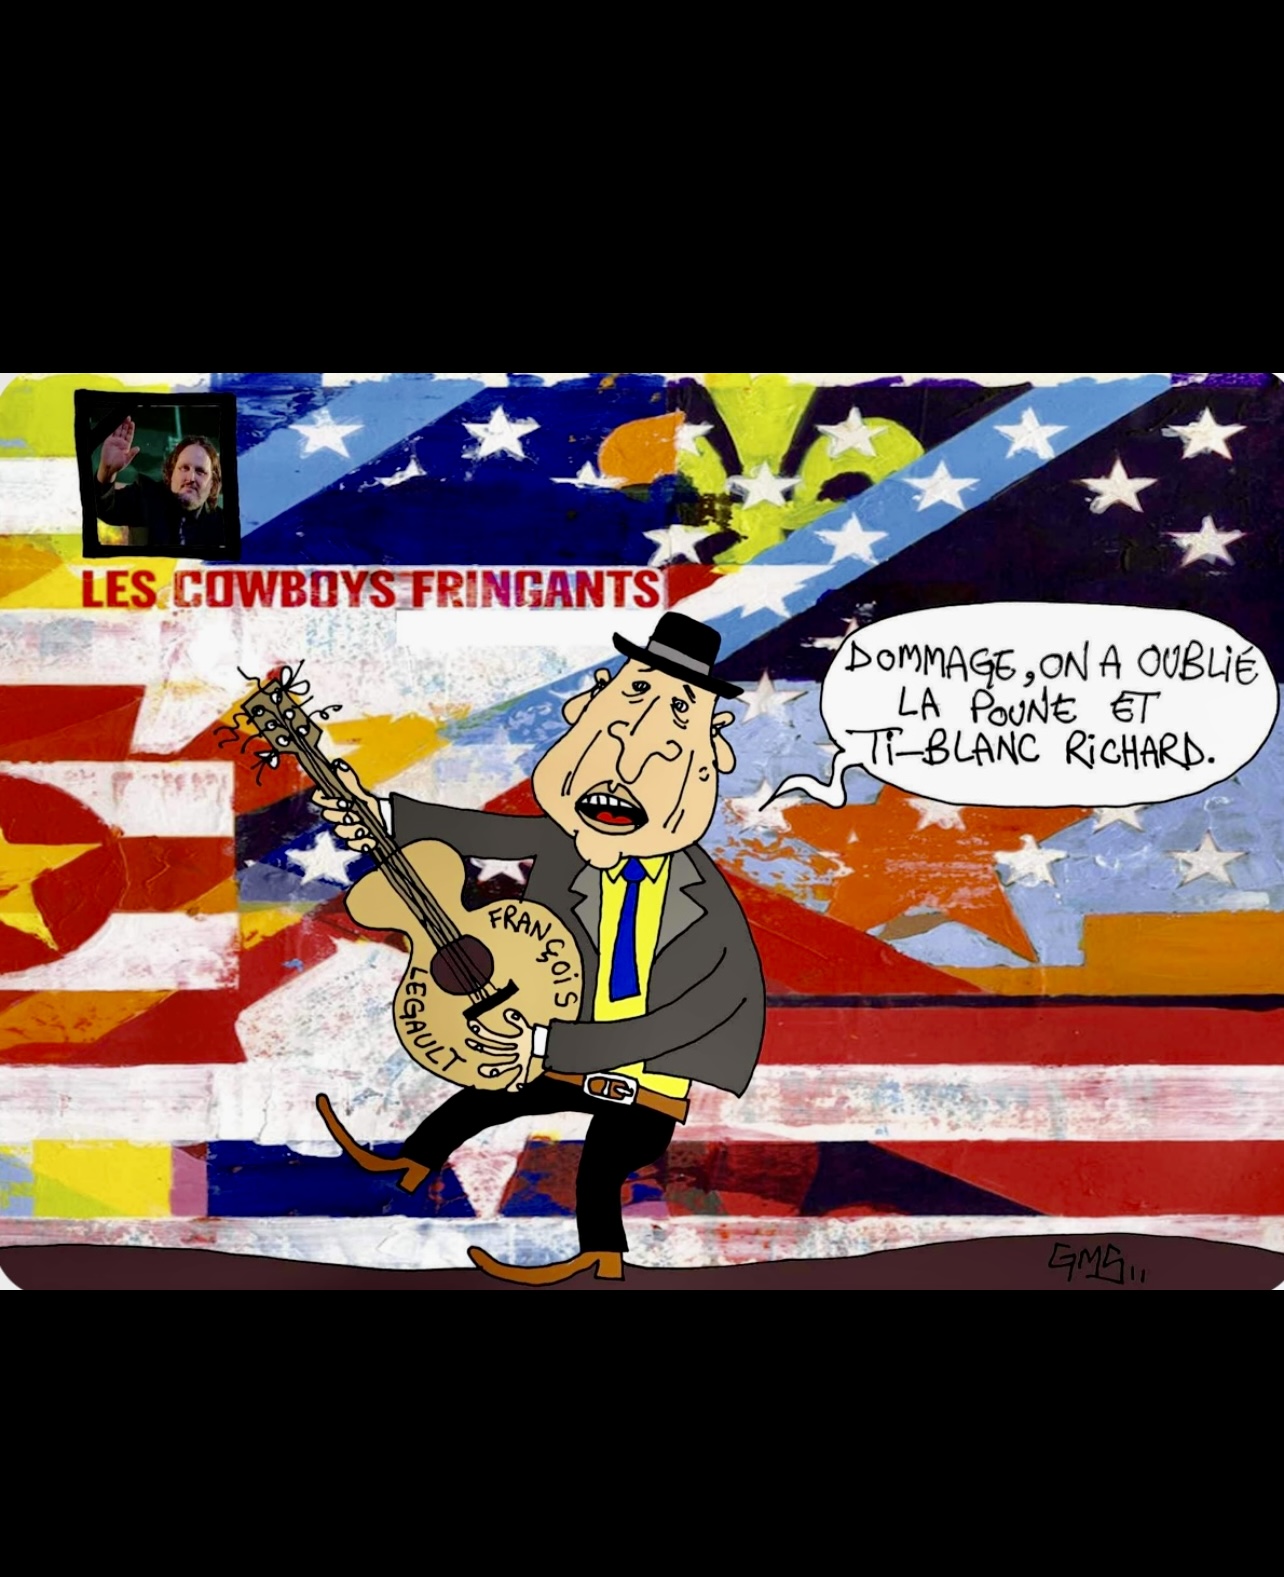 Caricature d'un homme avec une guitare et un drapeau américain, rendant hommage à La Poune.